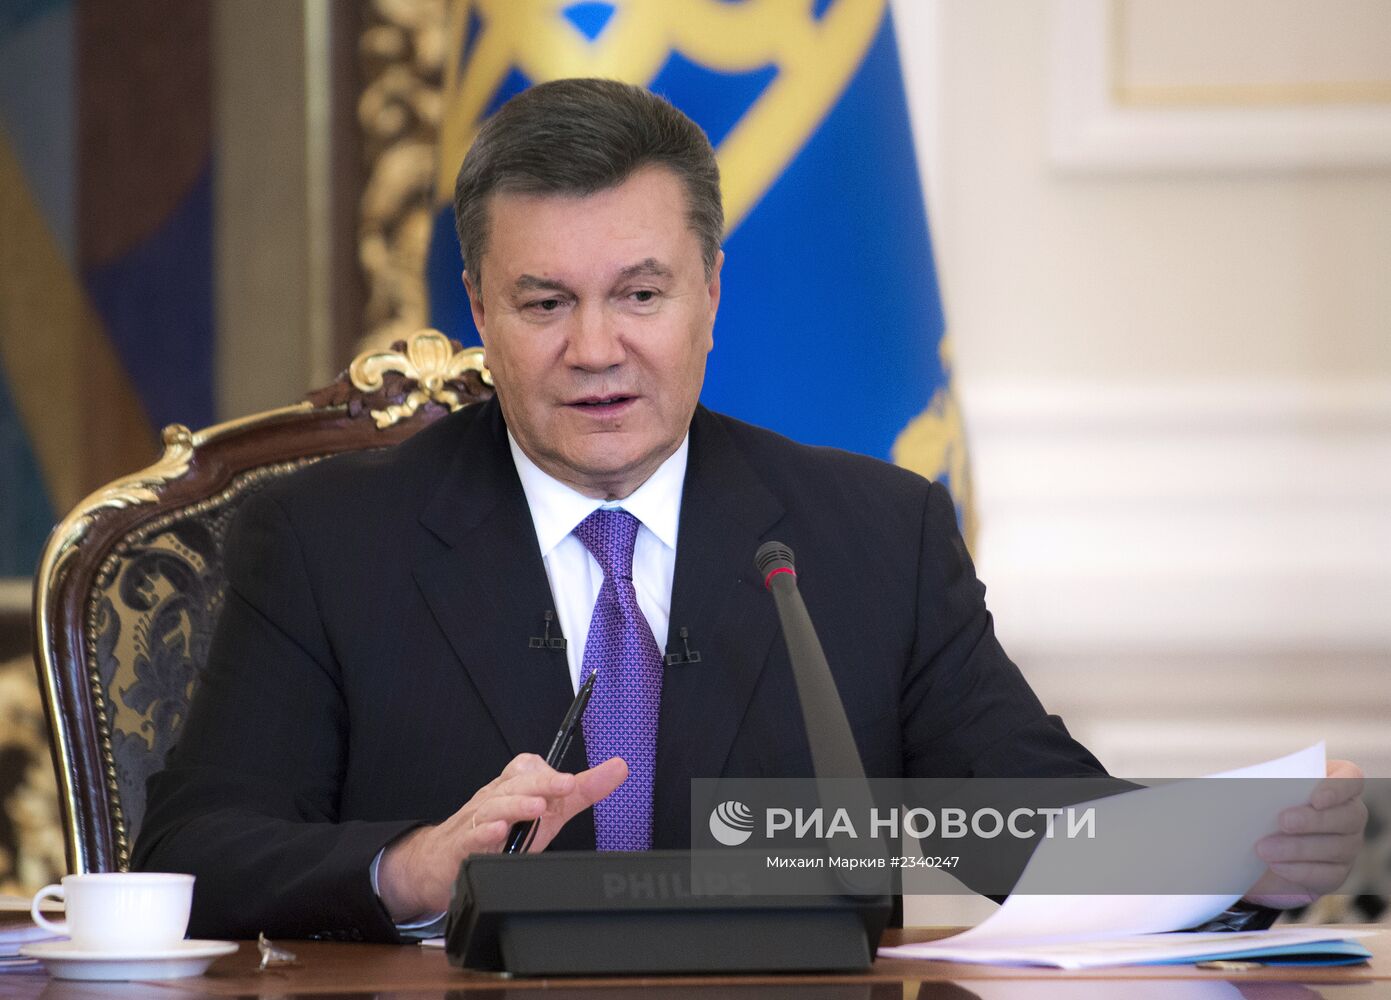 Виктор Янукович дал интервью представителям украинских СМИ